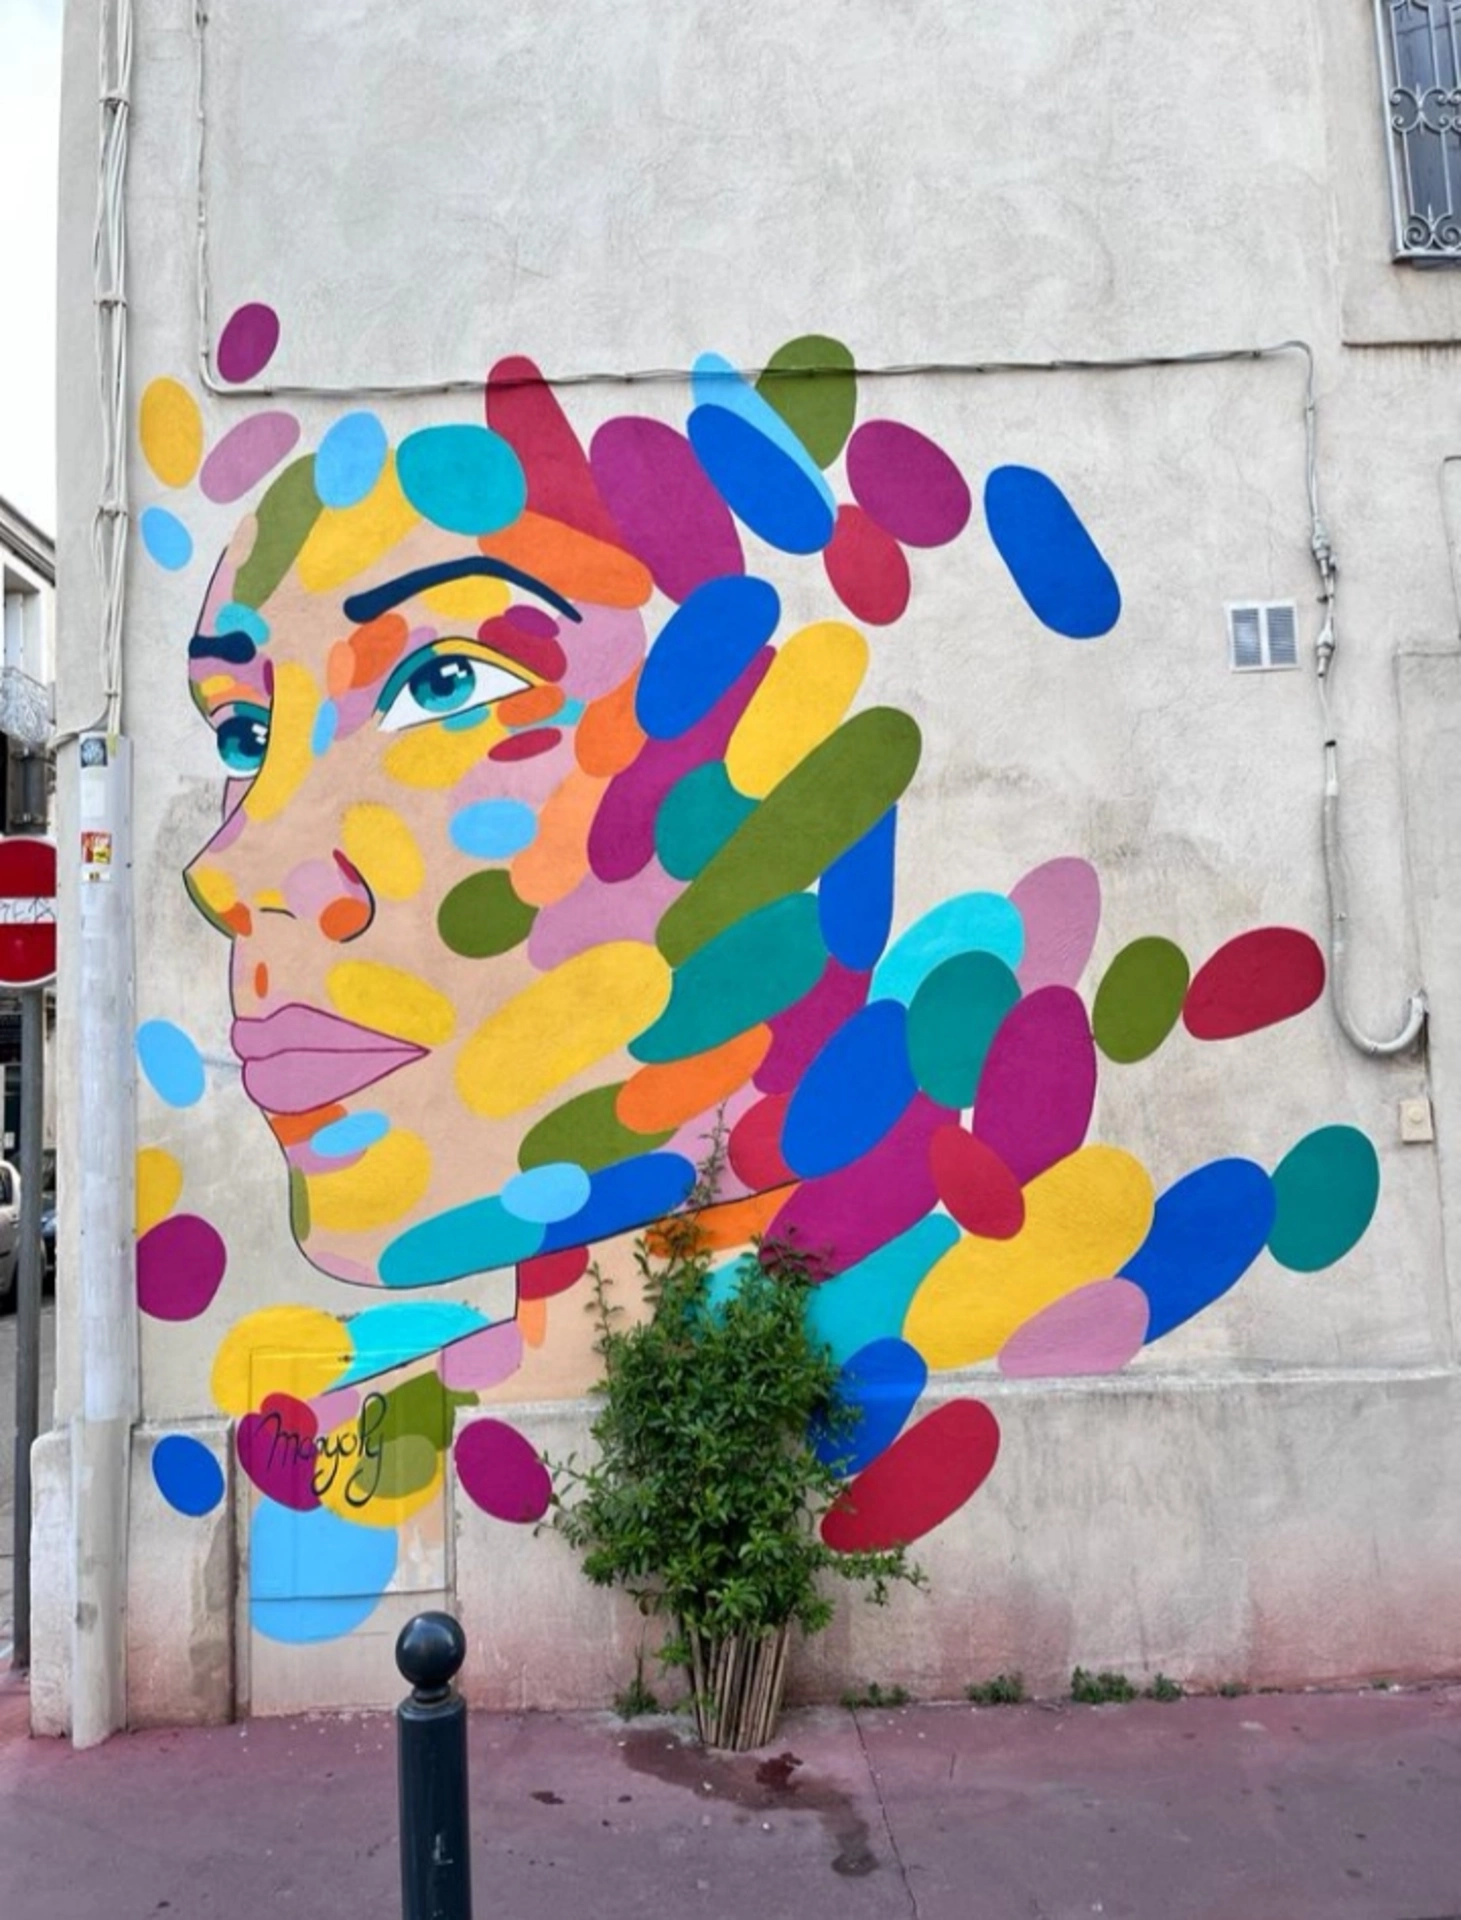 Oeuvre de Street Art réalisée par Magnoly à Montpellier